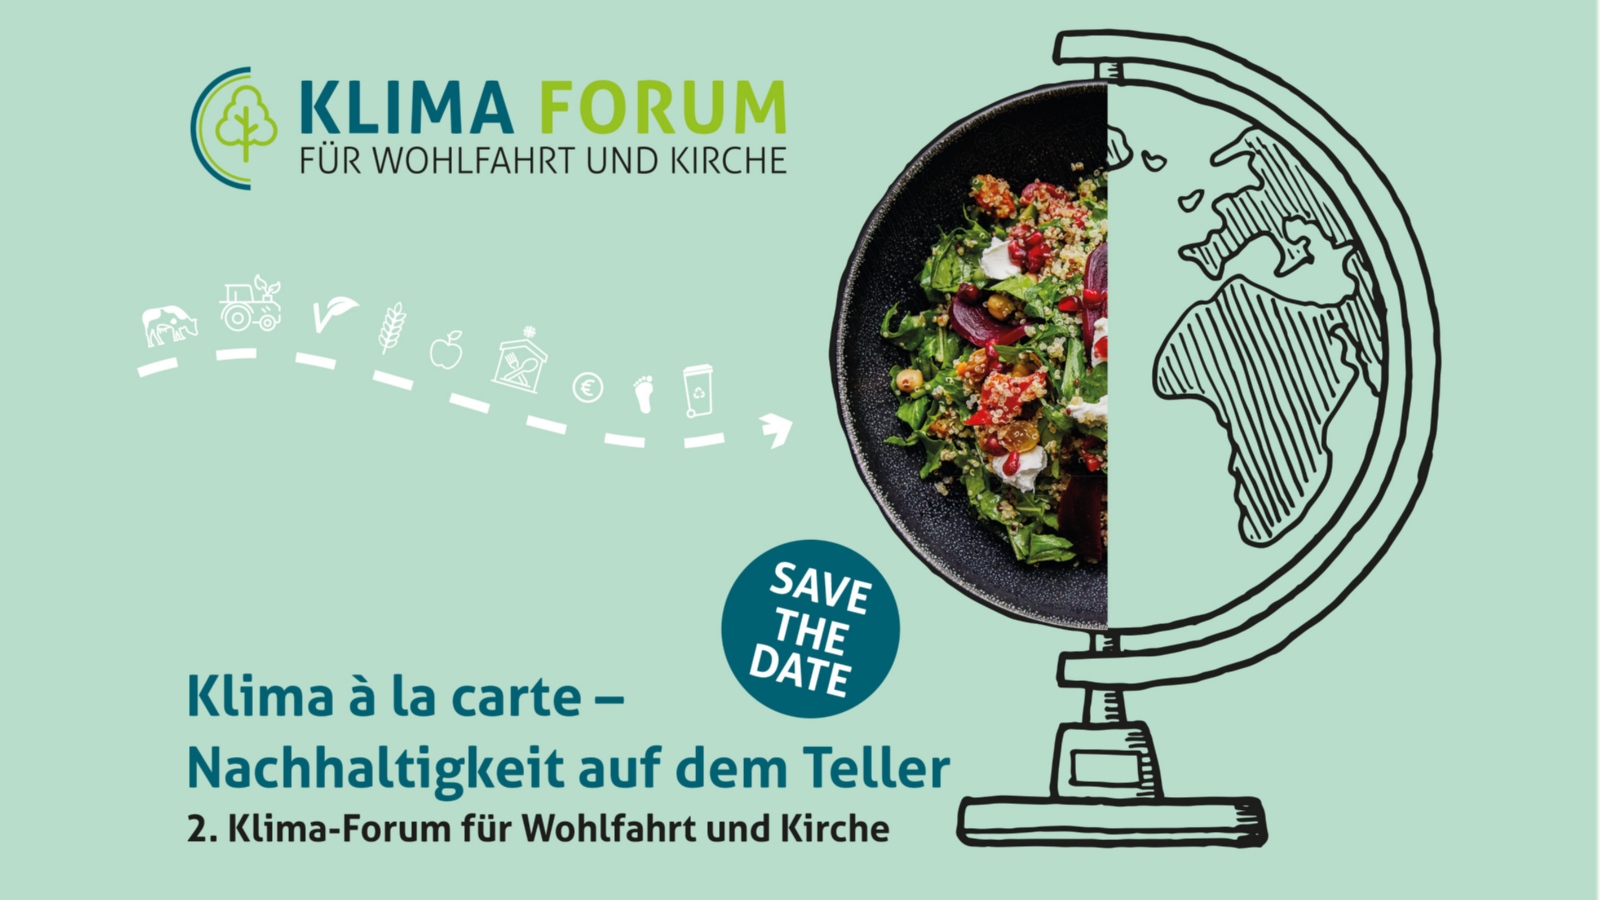 Save the date: 2. Klima-Forum für Wohlfahrt und Kirche